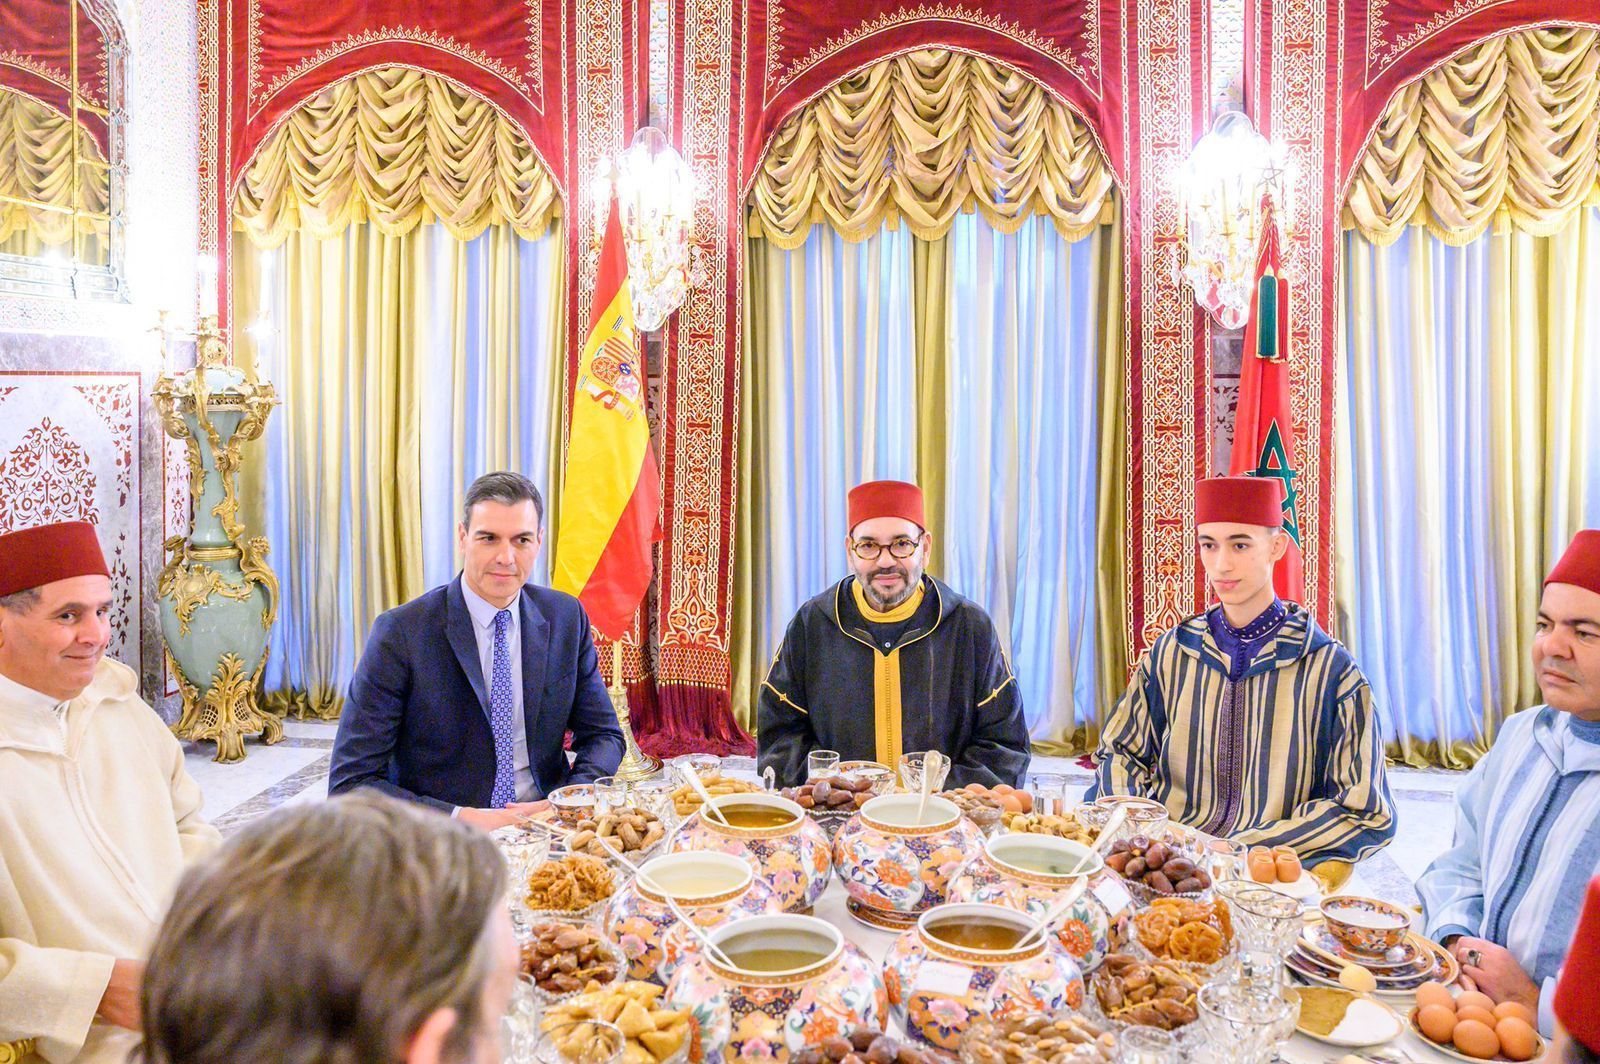 Mohamed VI y Pedro Snchez en el banquete de iftar con el que el monarca agasaj a su invitado.